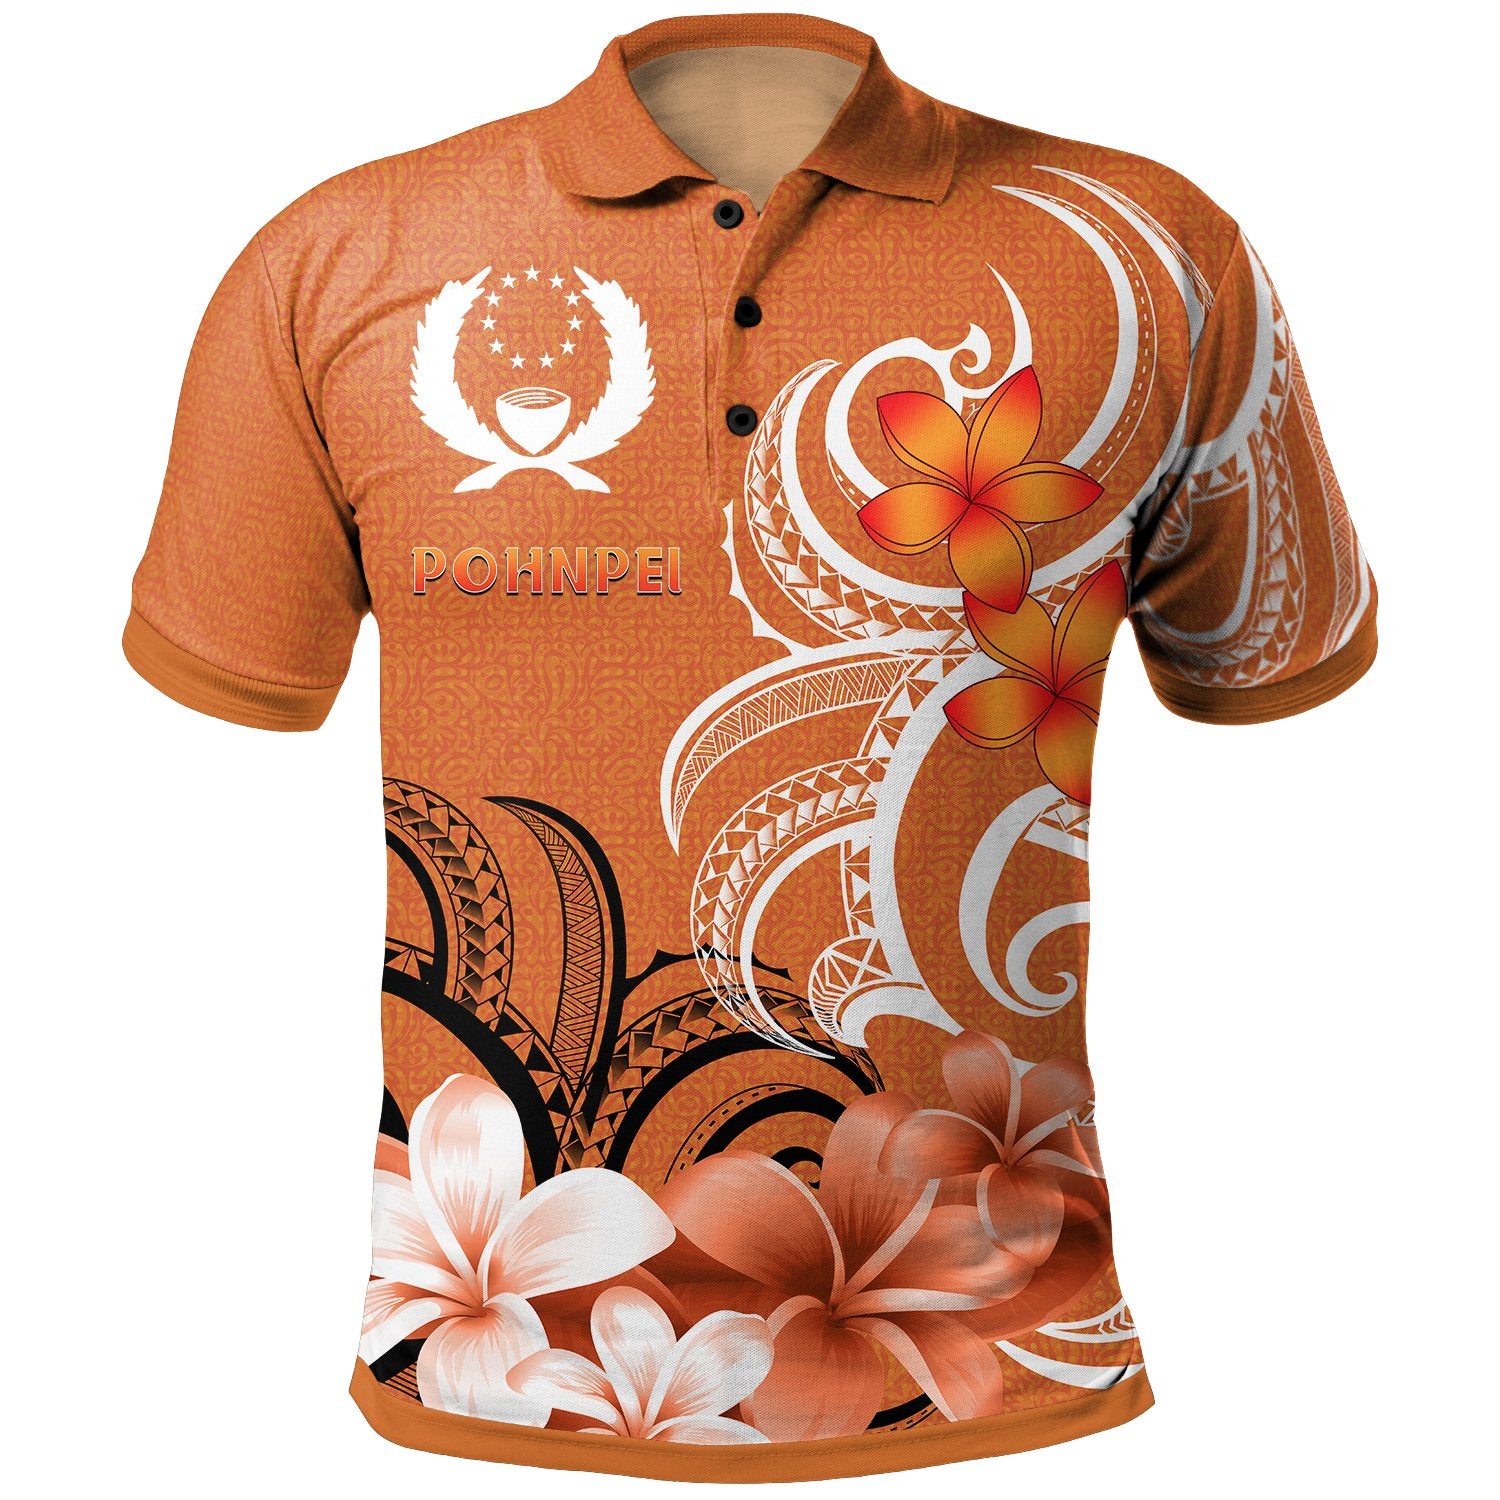 Pohpei Polo Shirt Pohnpei Spirit Unisex Orange - Polynesian Pride